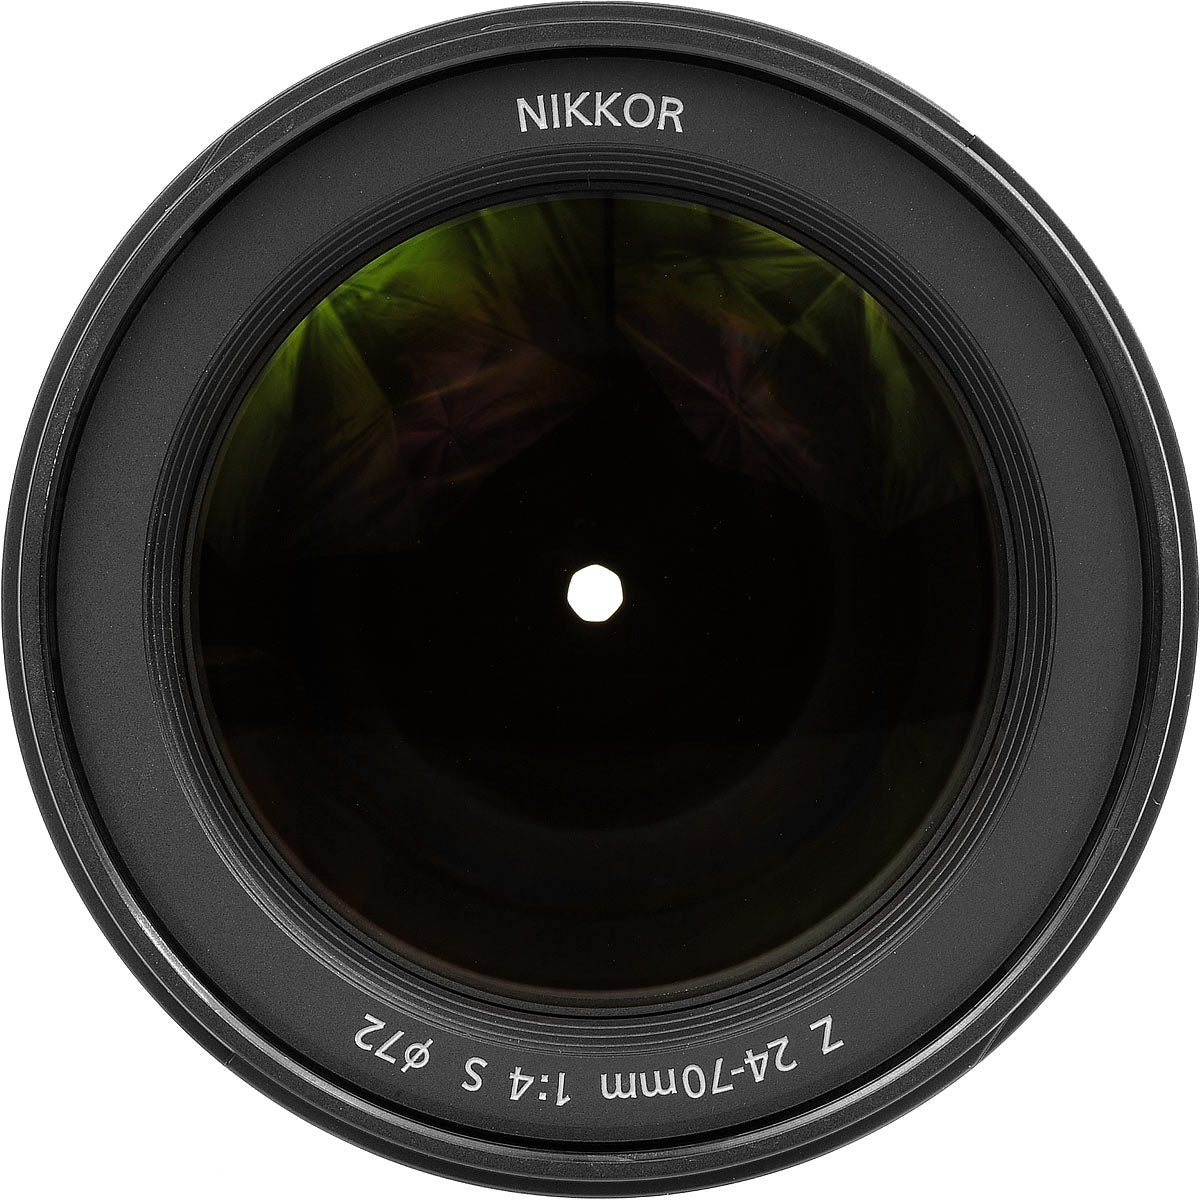 Nikon NIKKOR Z 24-70mm f/4 S Zoom Lens (20072) Intl Model Bundle + 64GB SD Card